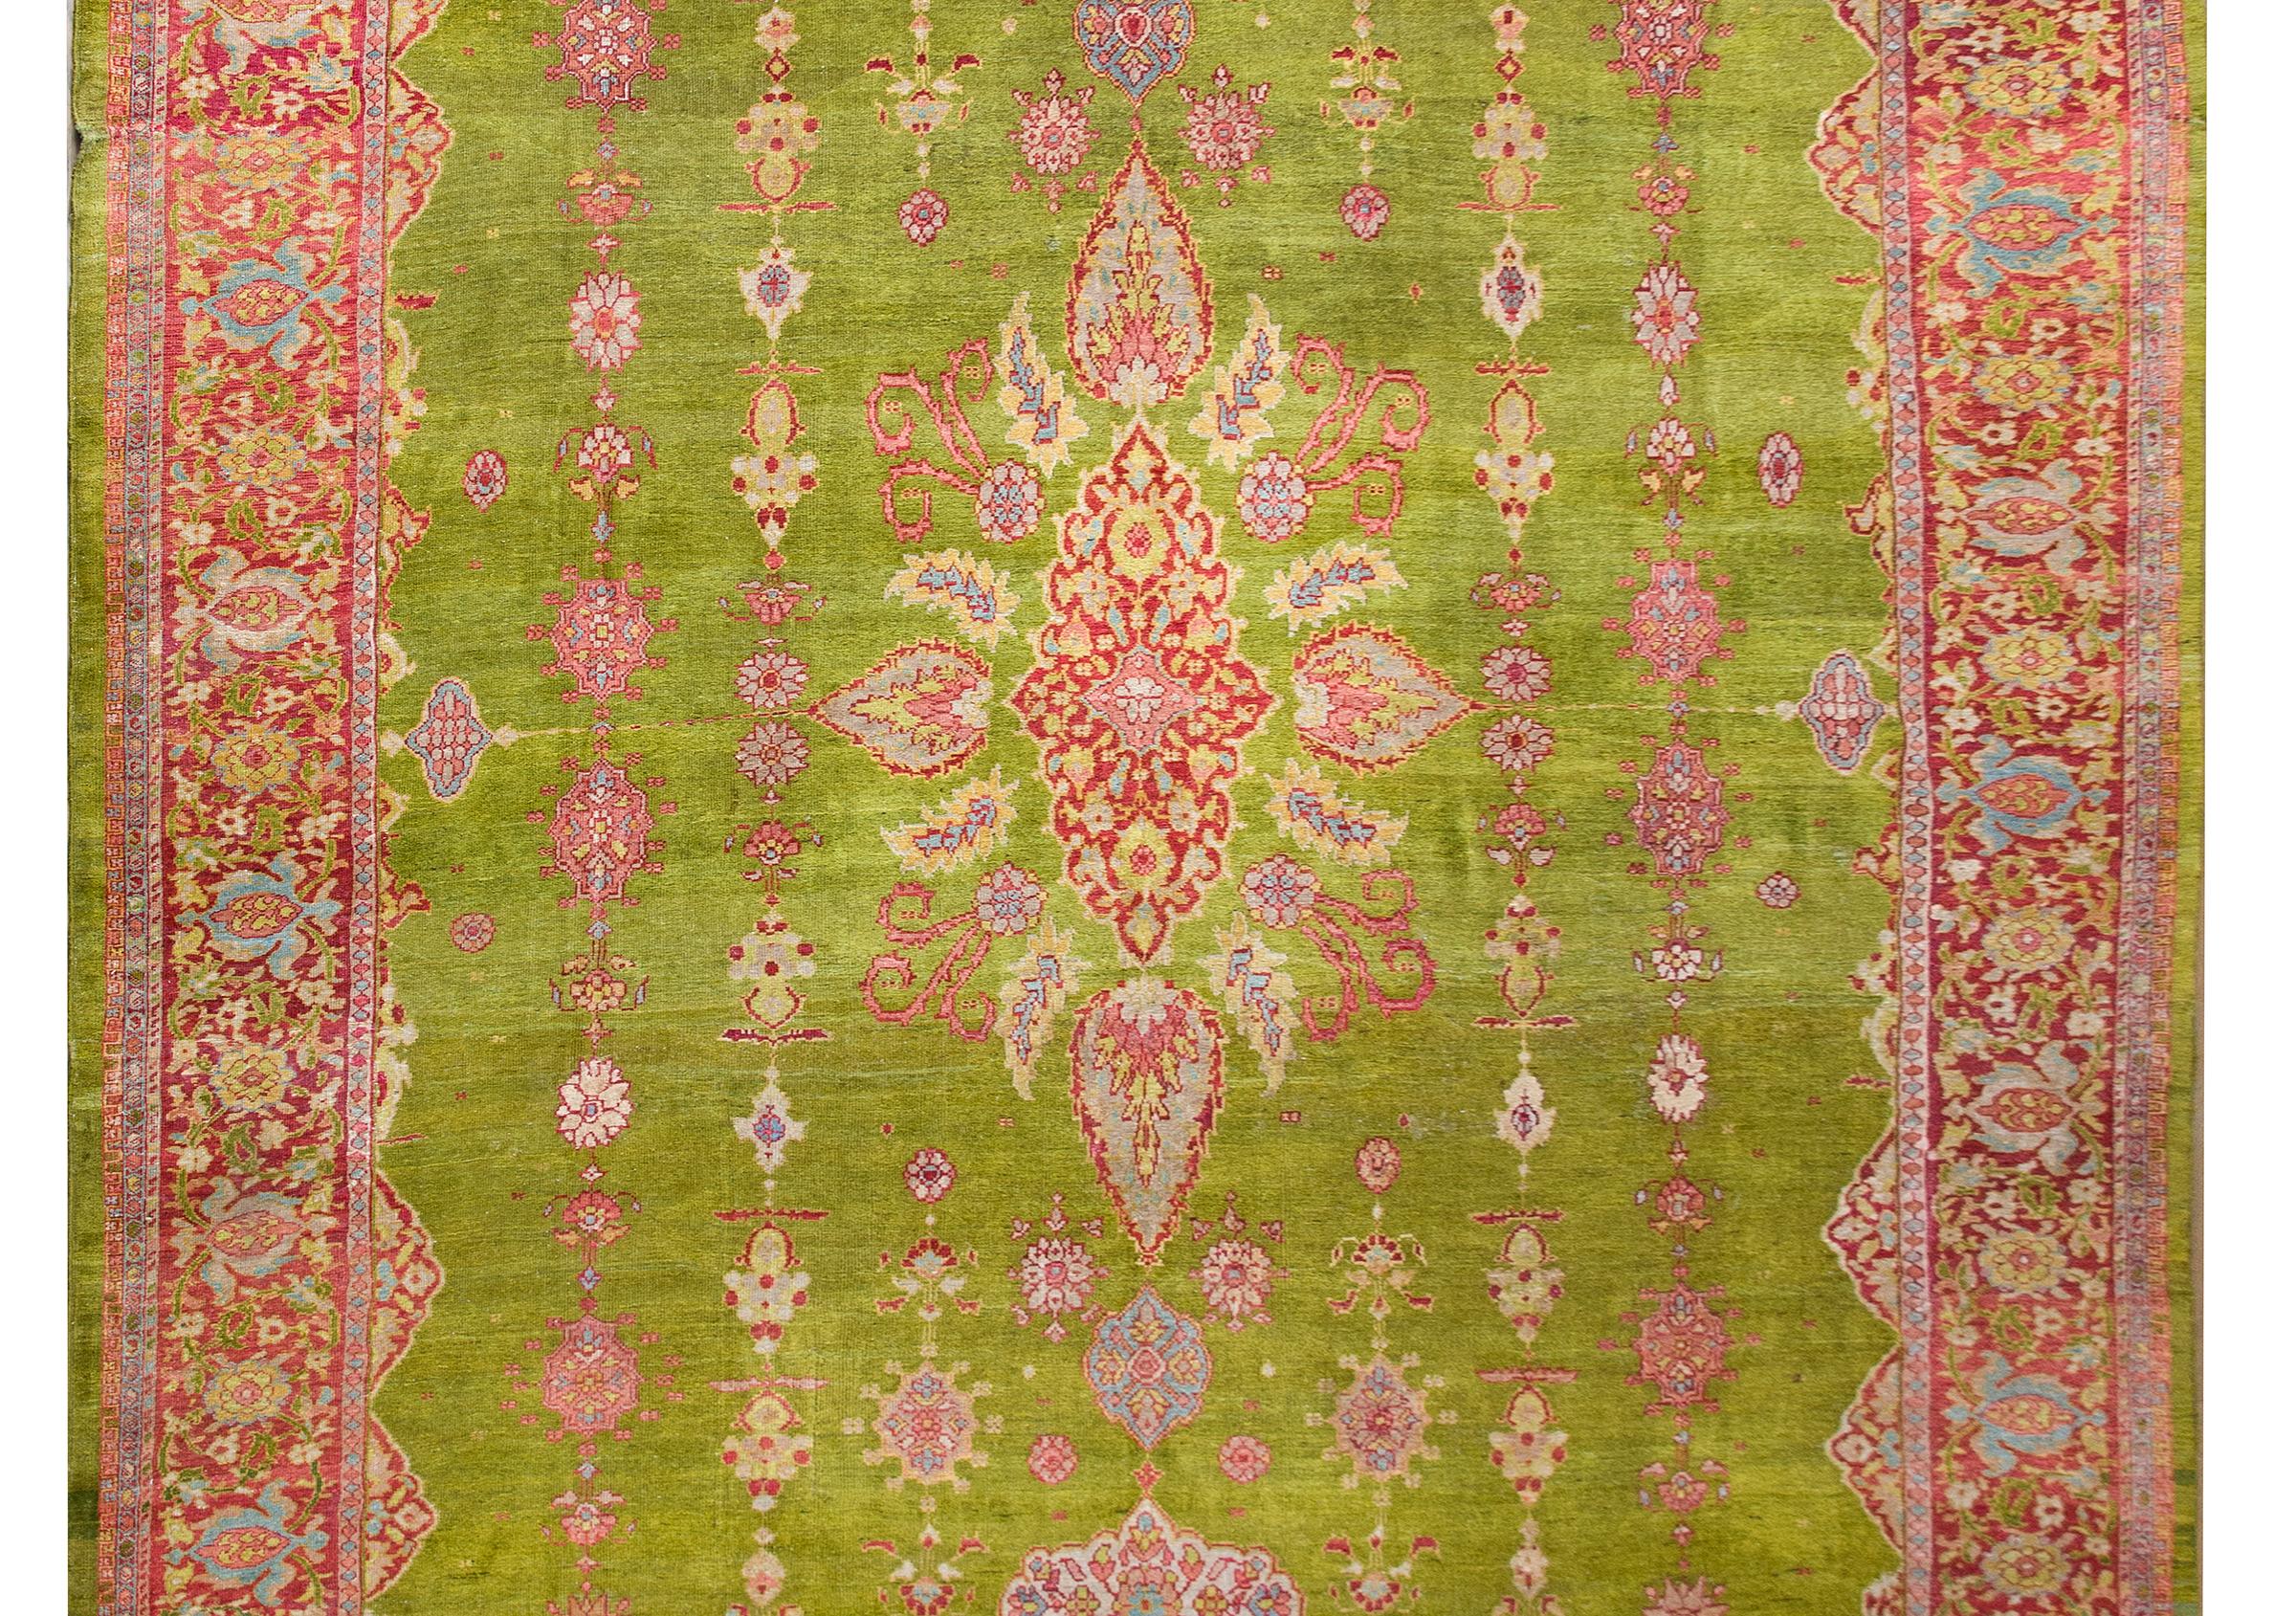 Ein atemberaubender und seltener persischer Sultanabad-Teppich aus dem späten 19. Jahrhundert mit einem wundervollen zentralen Blumenmedaillon inmitten eines Feldes aus stilisierten Blumen, die alle in leuchtenden Cranberry-, hellen Indigo-, Rosa-